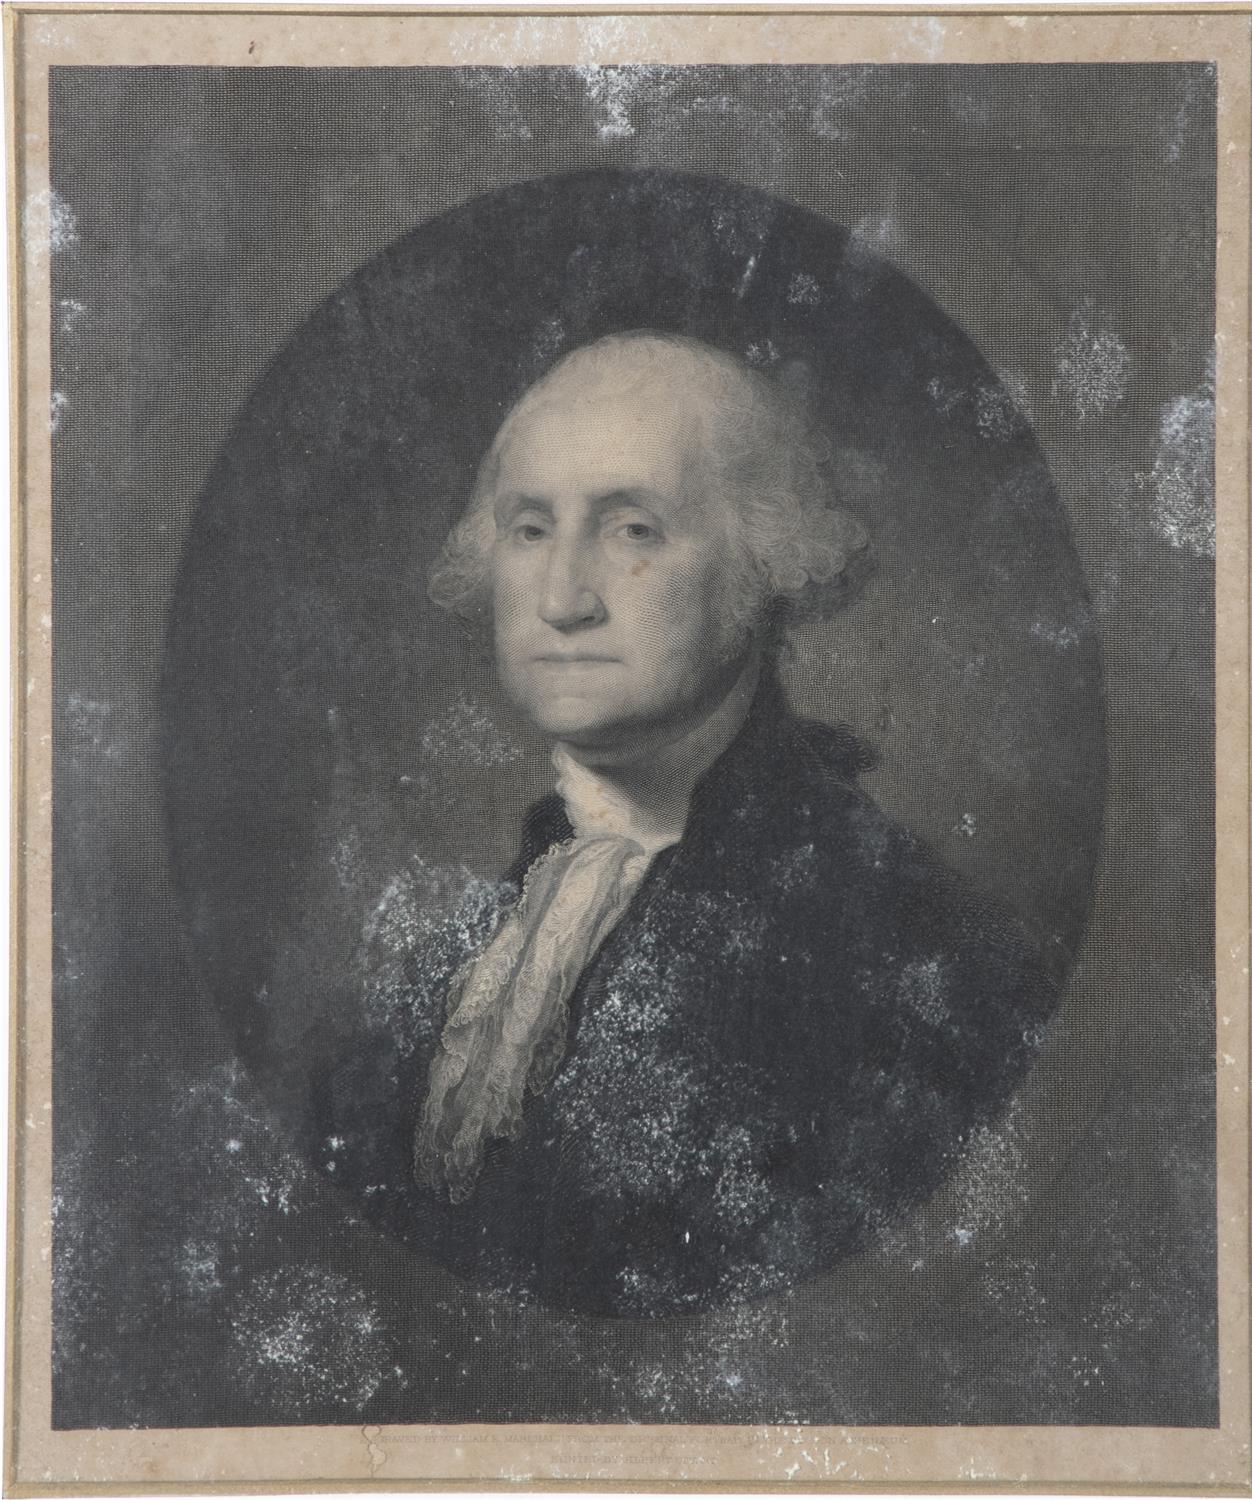 WILLIAM MARSHALL, AFTER STUART GILBERT Portrait of George Washington Published 1862, - Image 2 of 3